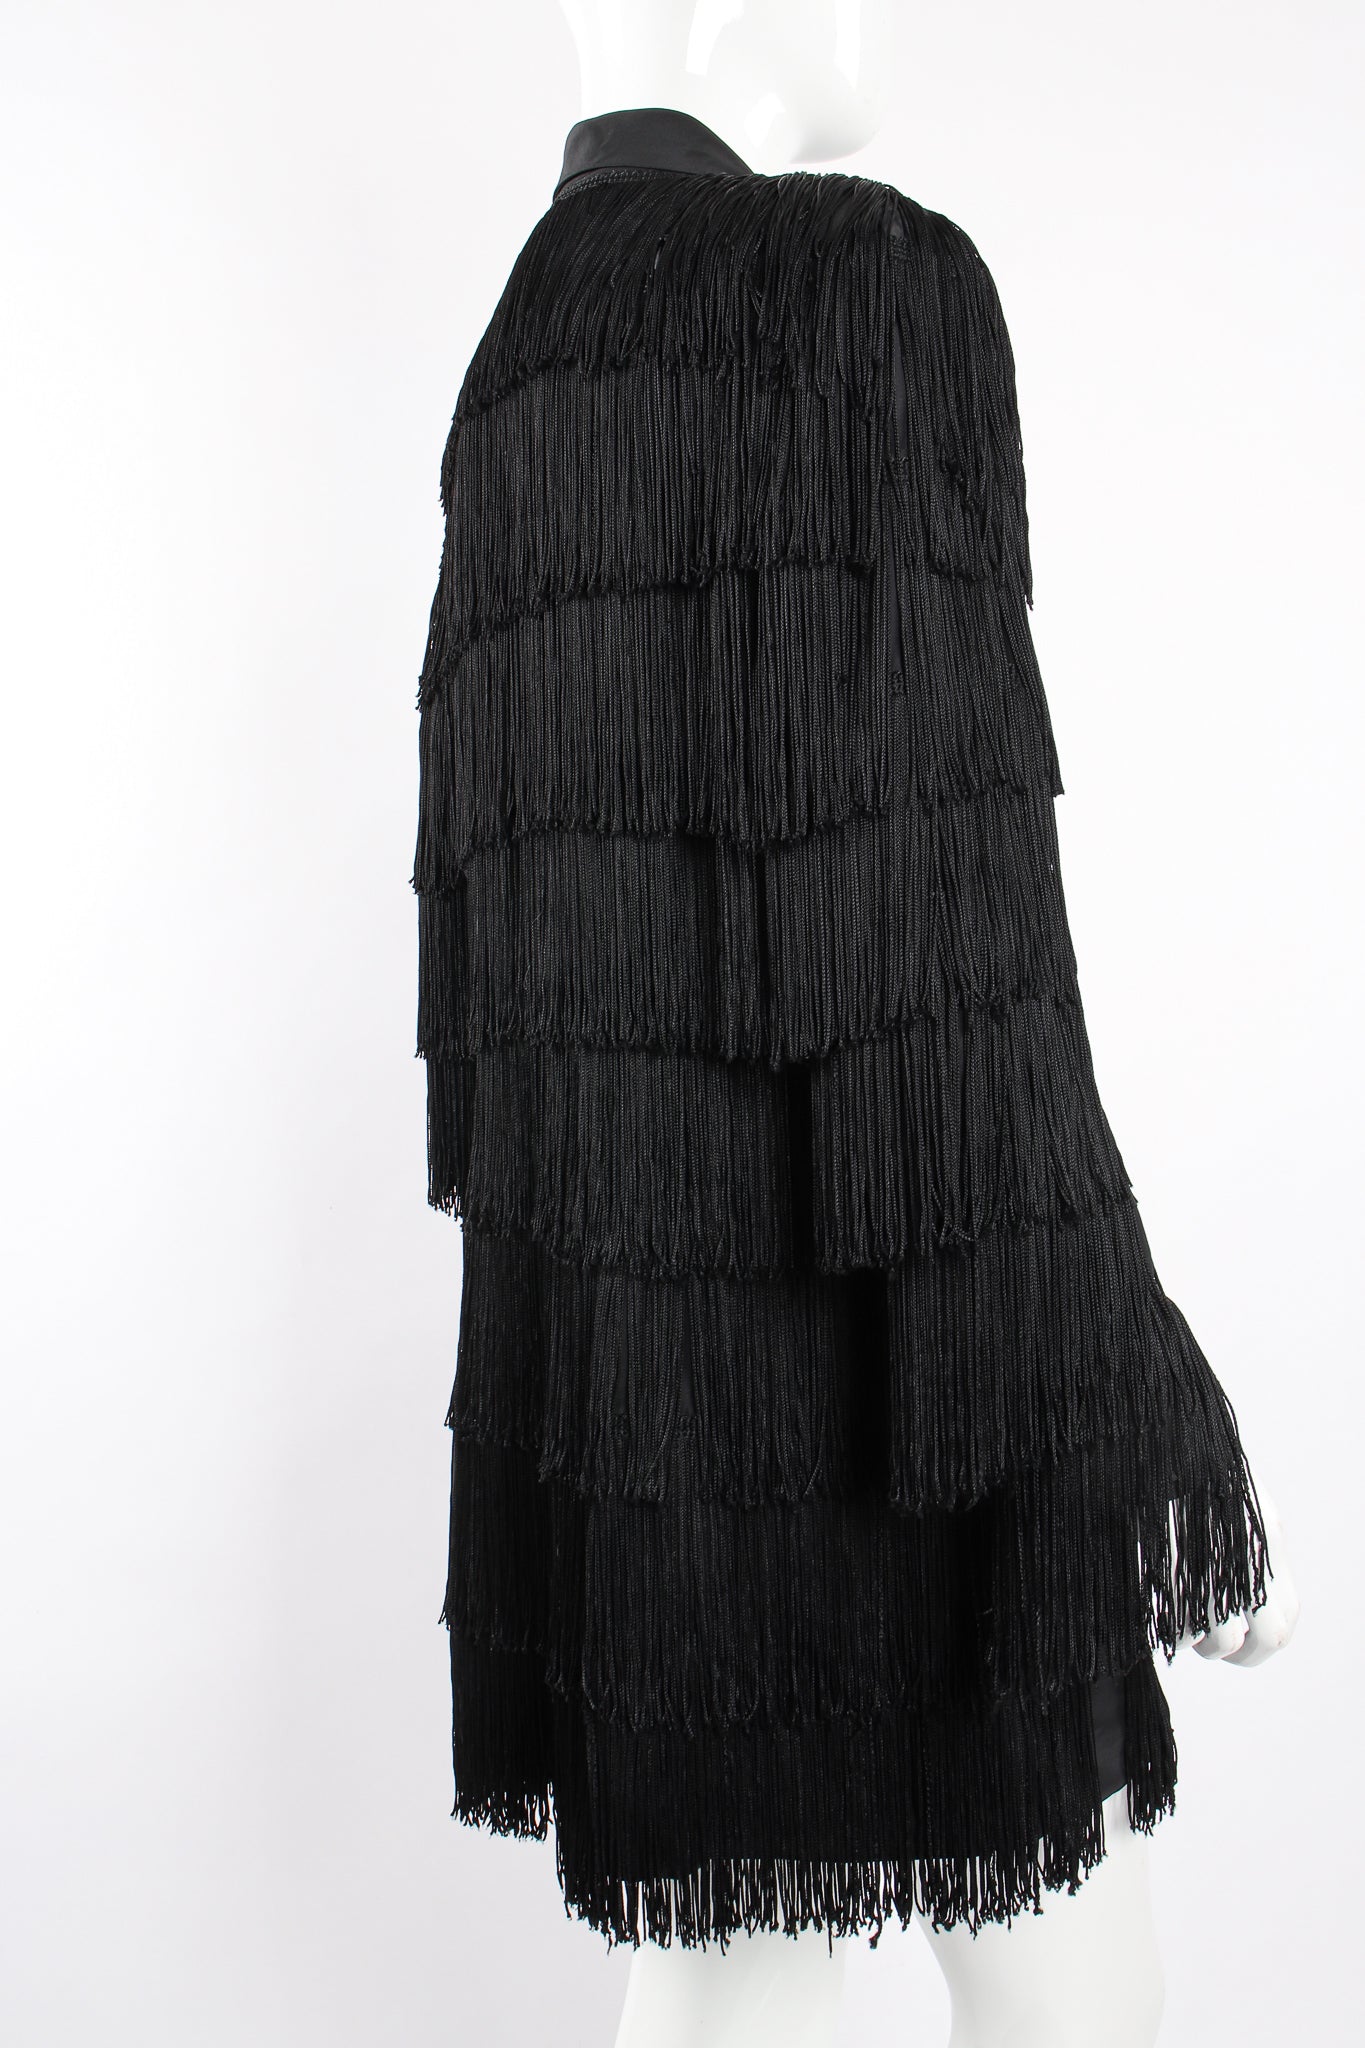 Vintage OMO Norma Kamali Fringed Shirt Dress Jacket on Mannequin back crop at Recess Los Angeles